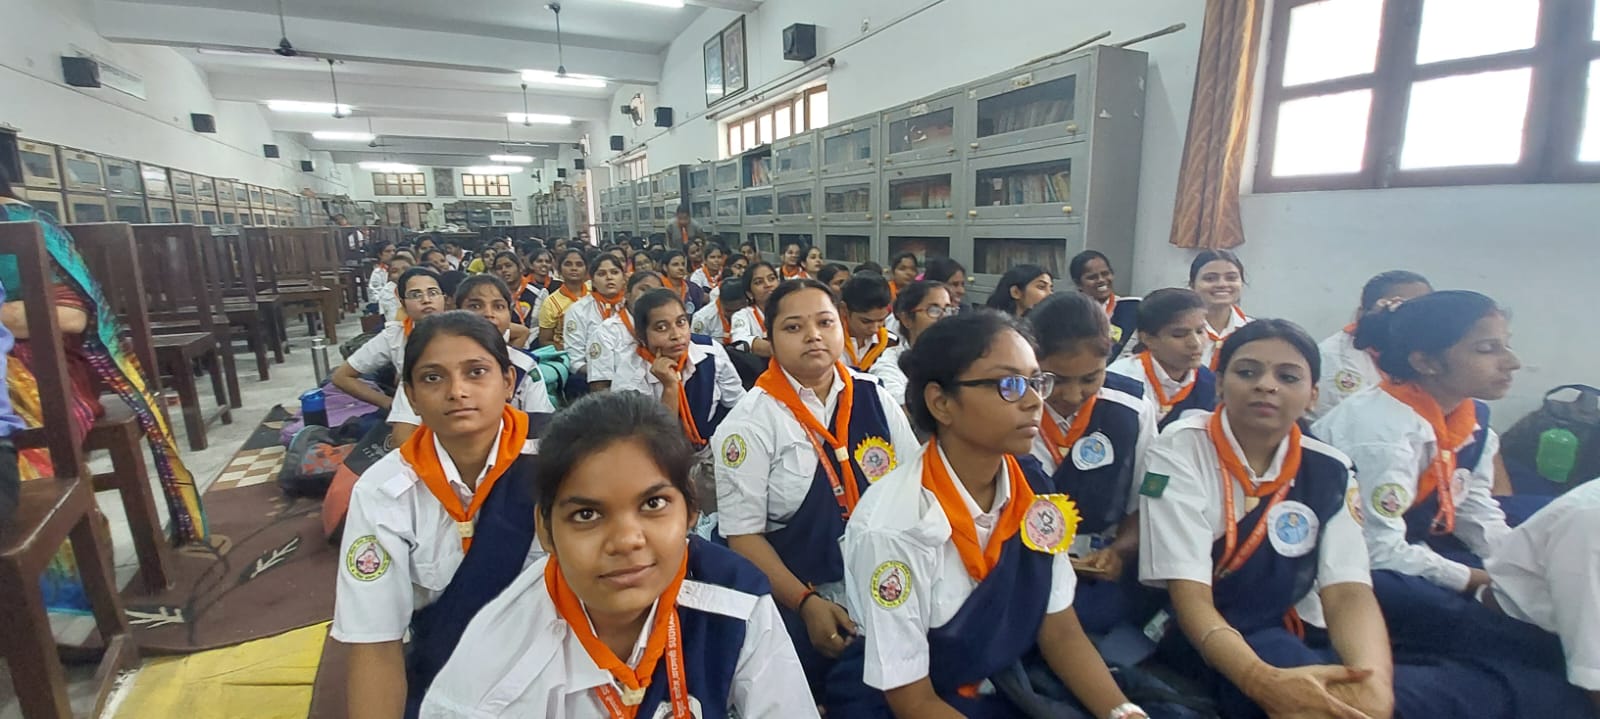 UP Bharat Scout Guide का पांच दिवसीय शिविर, B. Ed. की छात्राओं ने दिखाए शानदार हैंडीक्राफ्ट, सांस्कृतिक कार्यक्रम का भी आयोजन